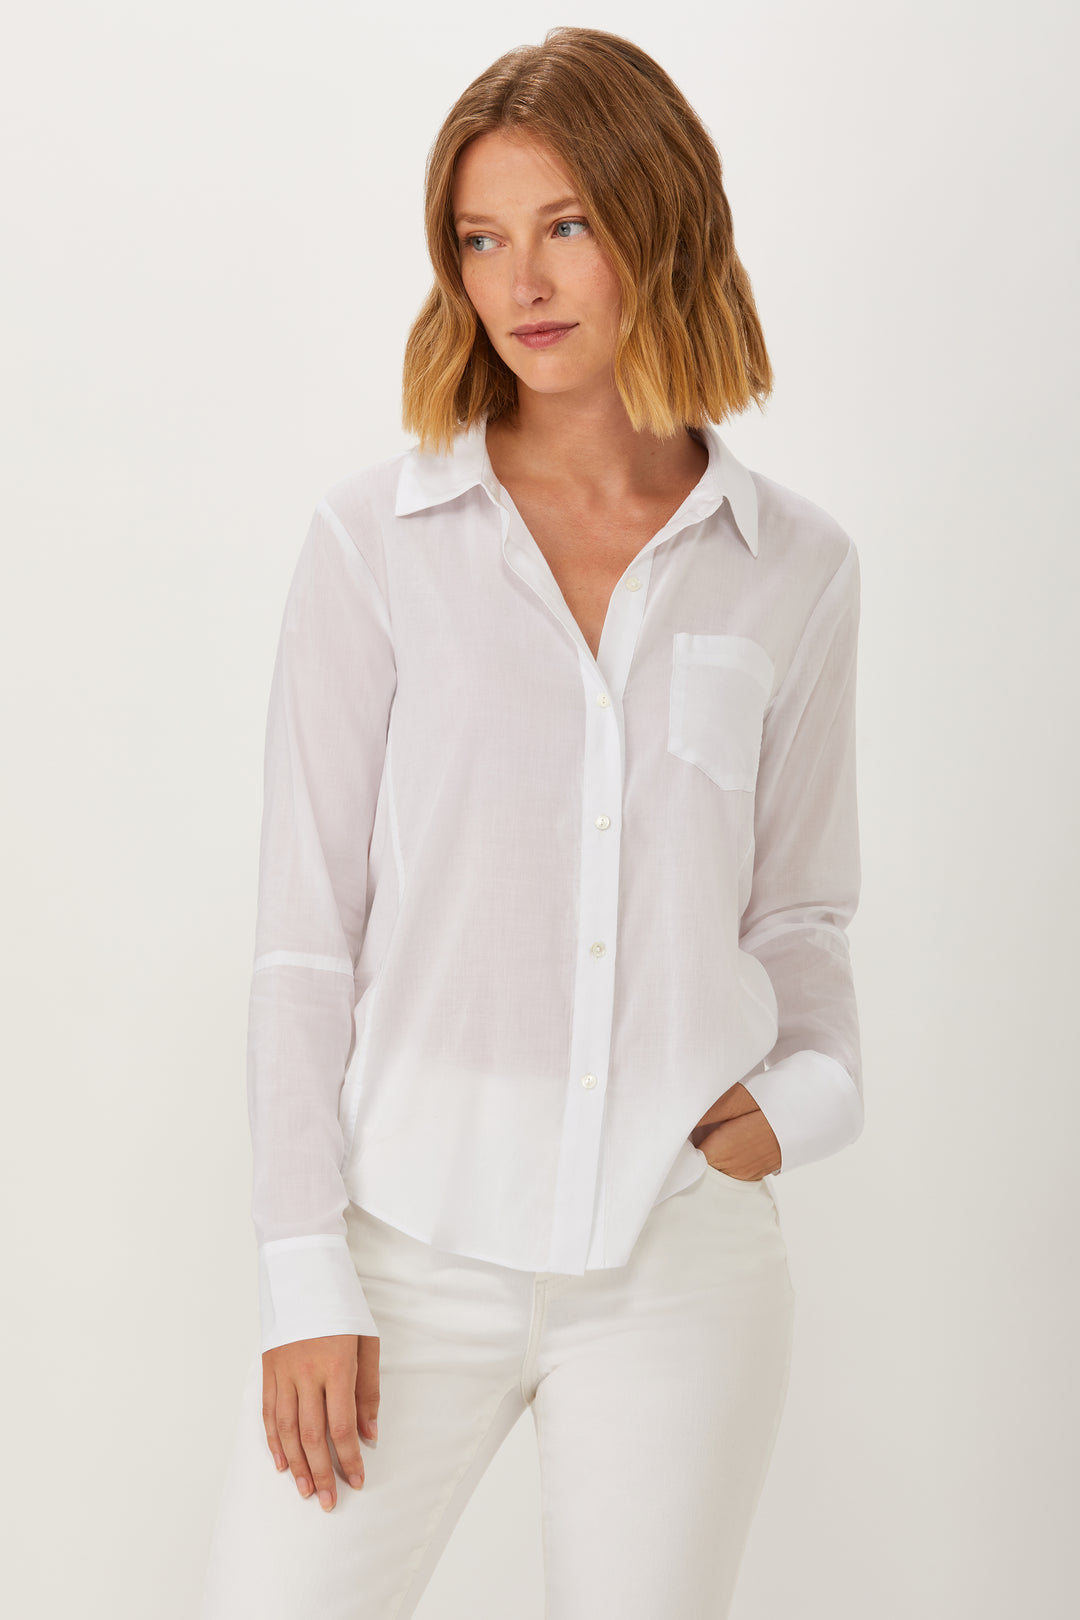 Hepburn New Classic Shirt - White